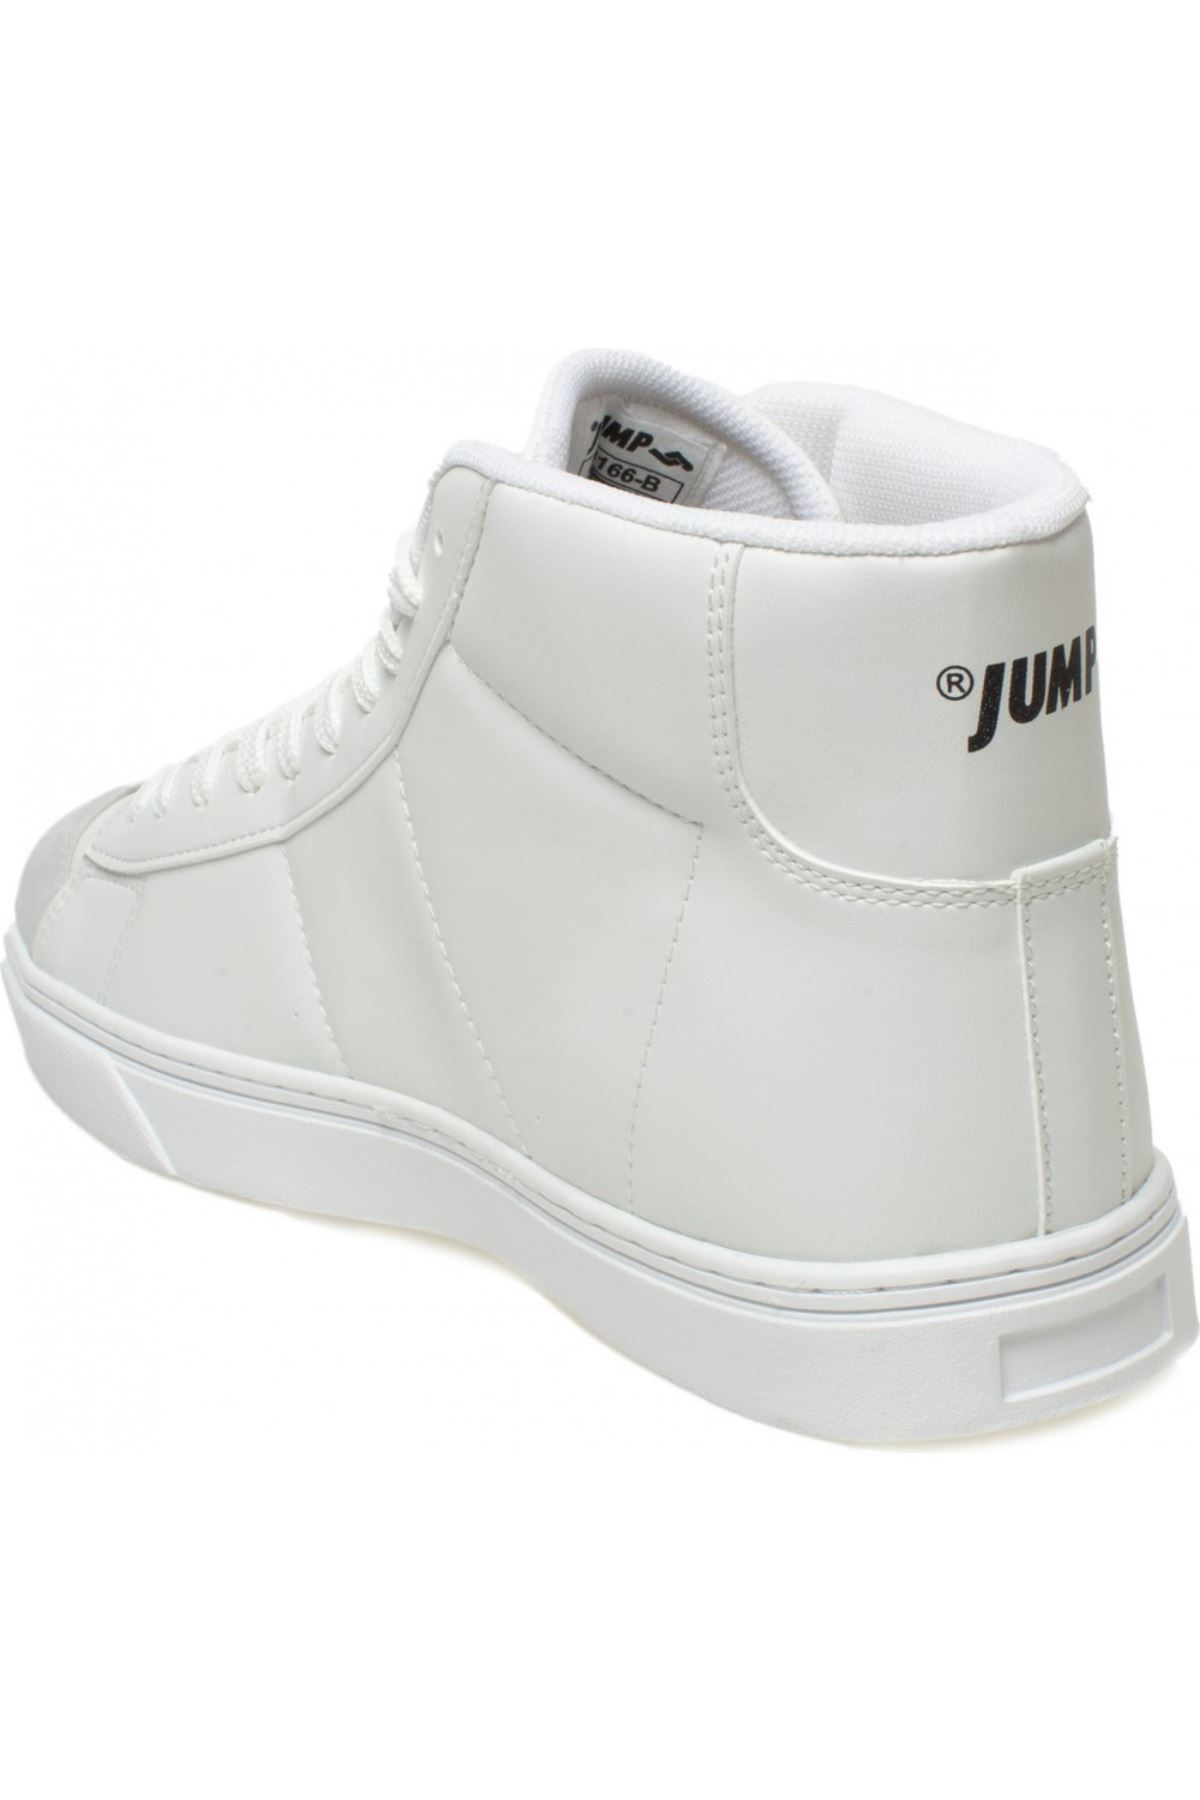 Jump Erkek Beyaz Spor Ayakkabı - 28166M